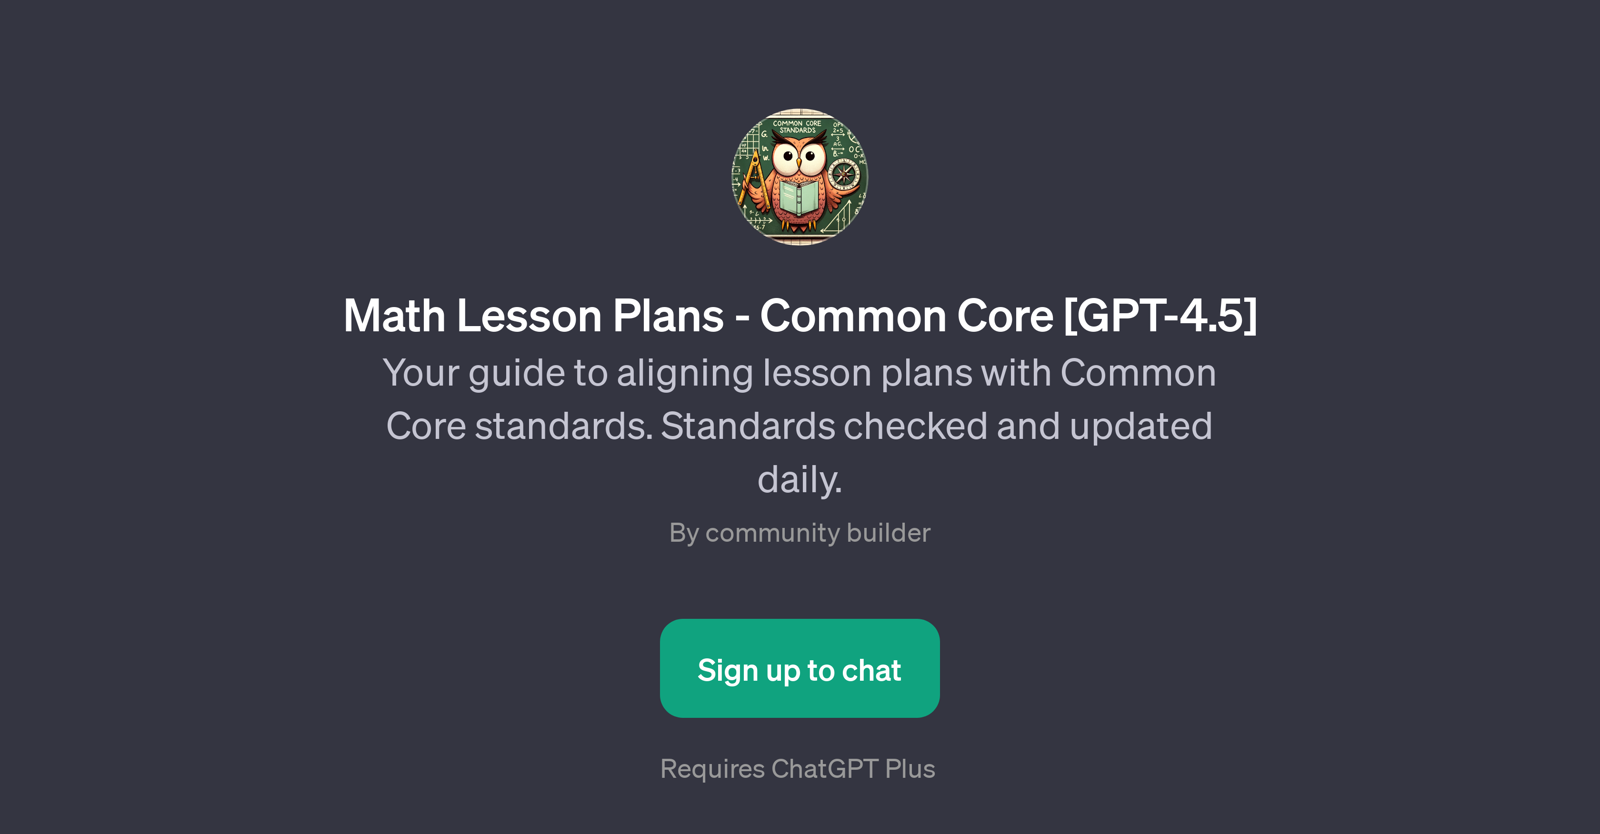 Math Lesson Plans - Common Core [GPT-4.5] website